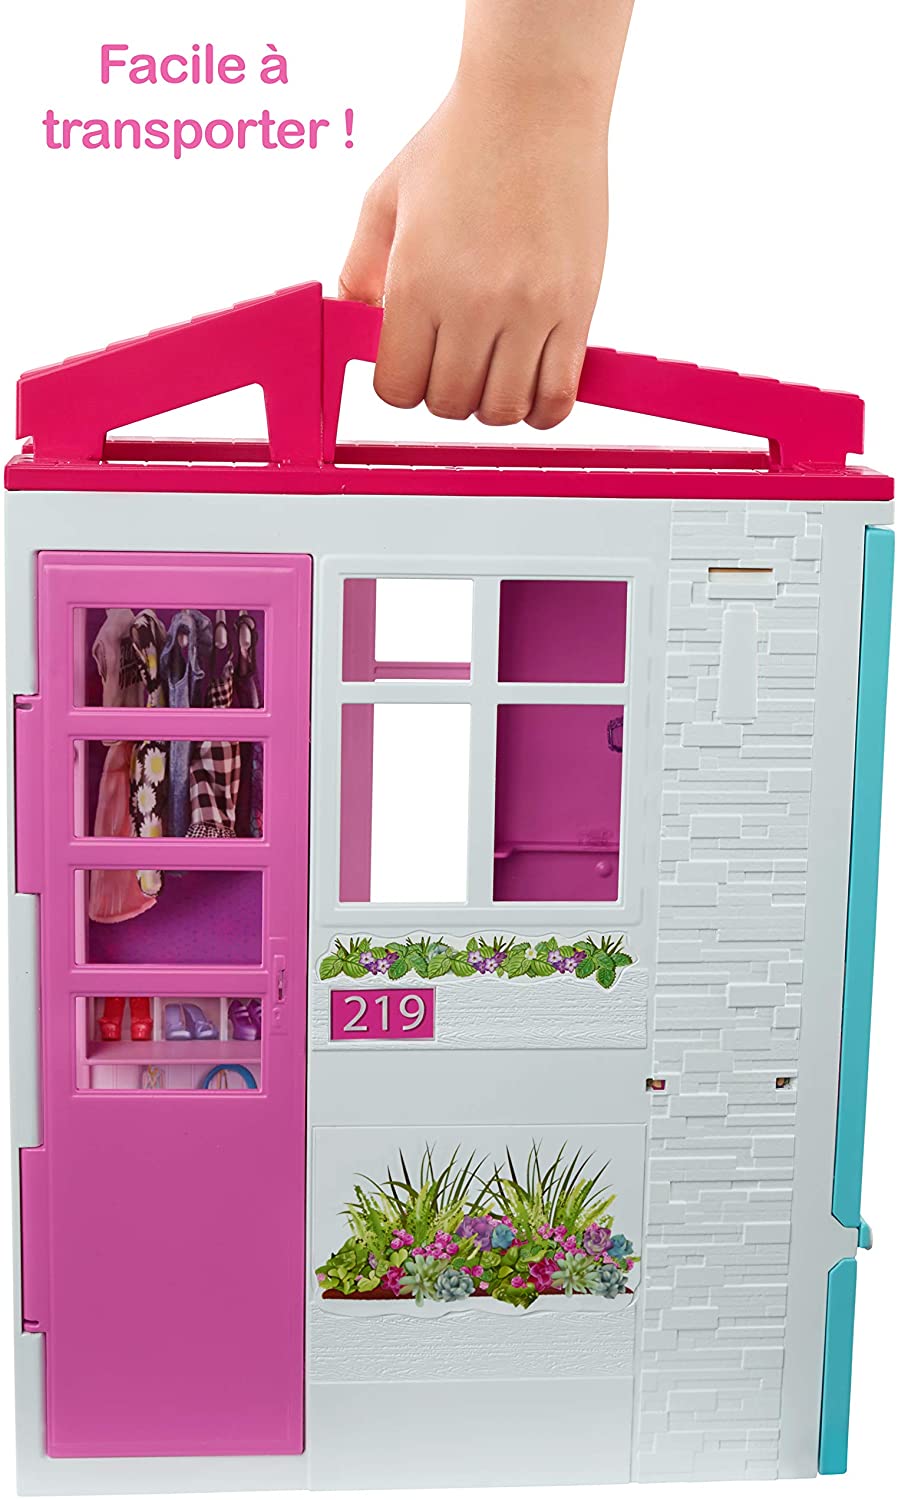 Jouet Mattel - FXG55 - Barbie + Sa Maison a Emporter - Maison de Poupee Repliable + Transformable - 1 Poupee 2